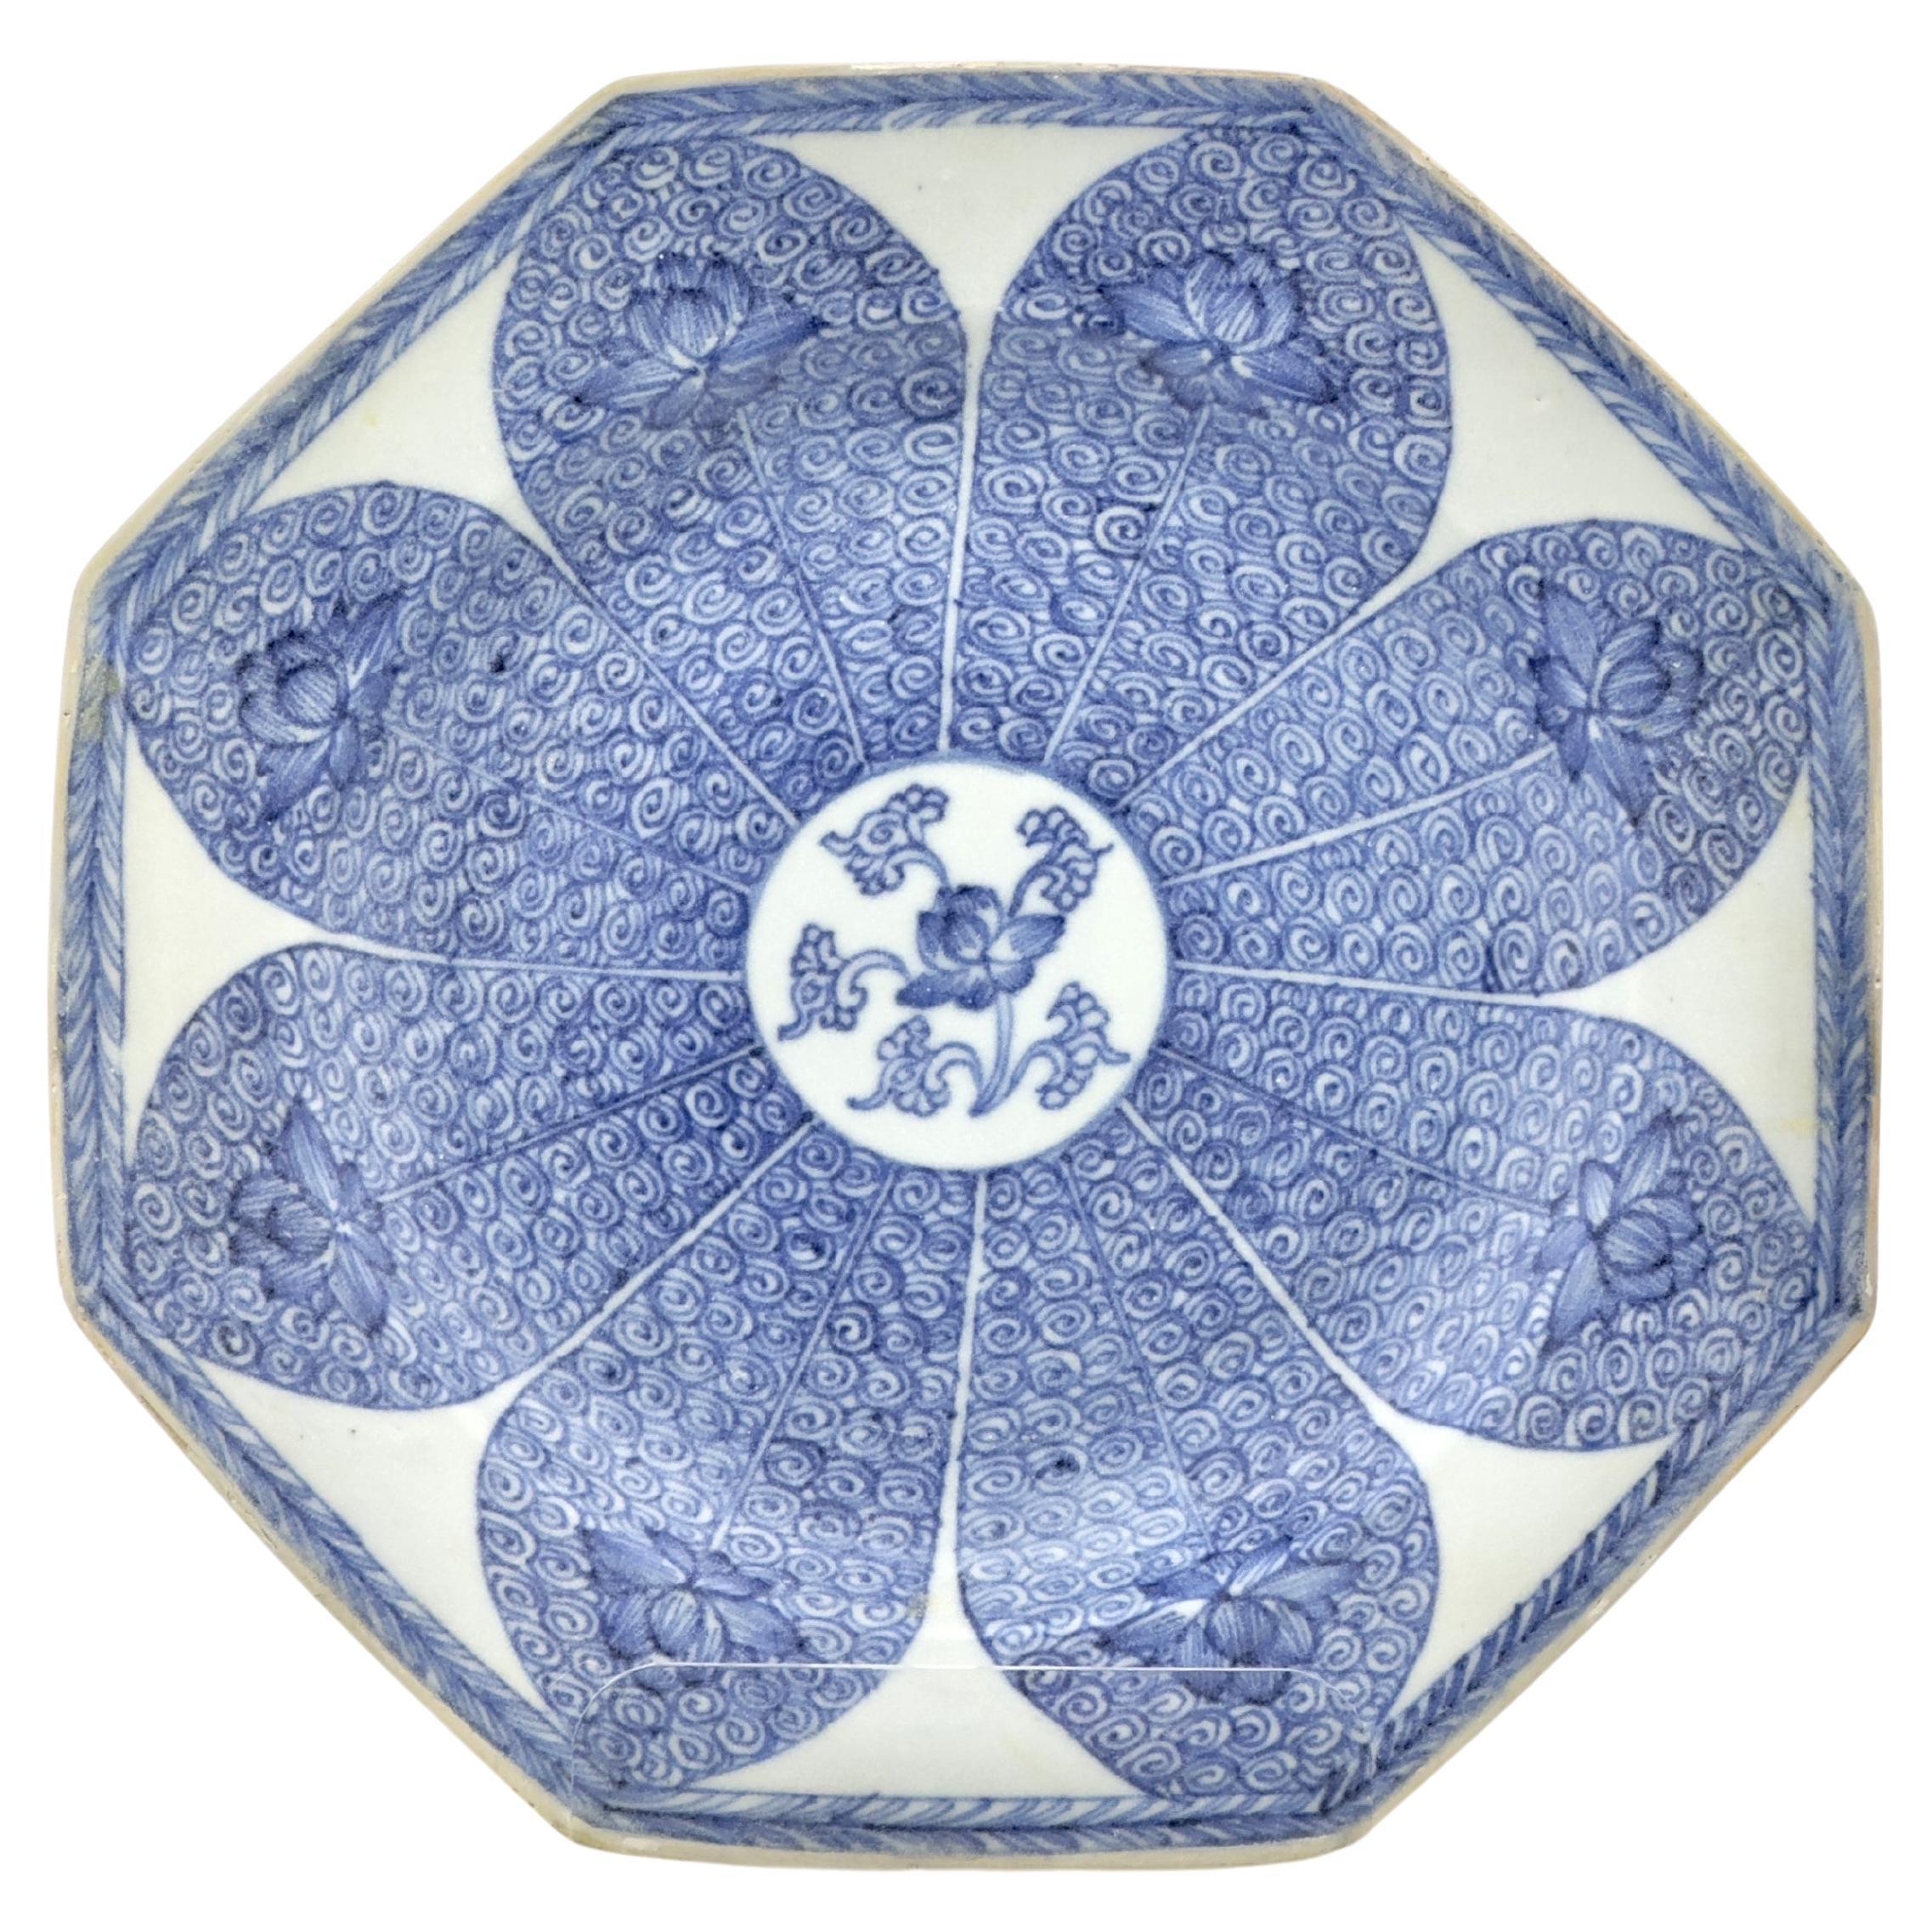 Blau-weiße Schale mit 'Lotus'-Muster, um 1725, Qing Dynastie, Yongzheng-Ära